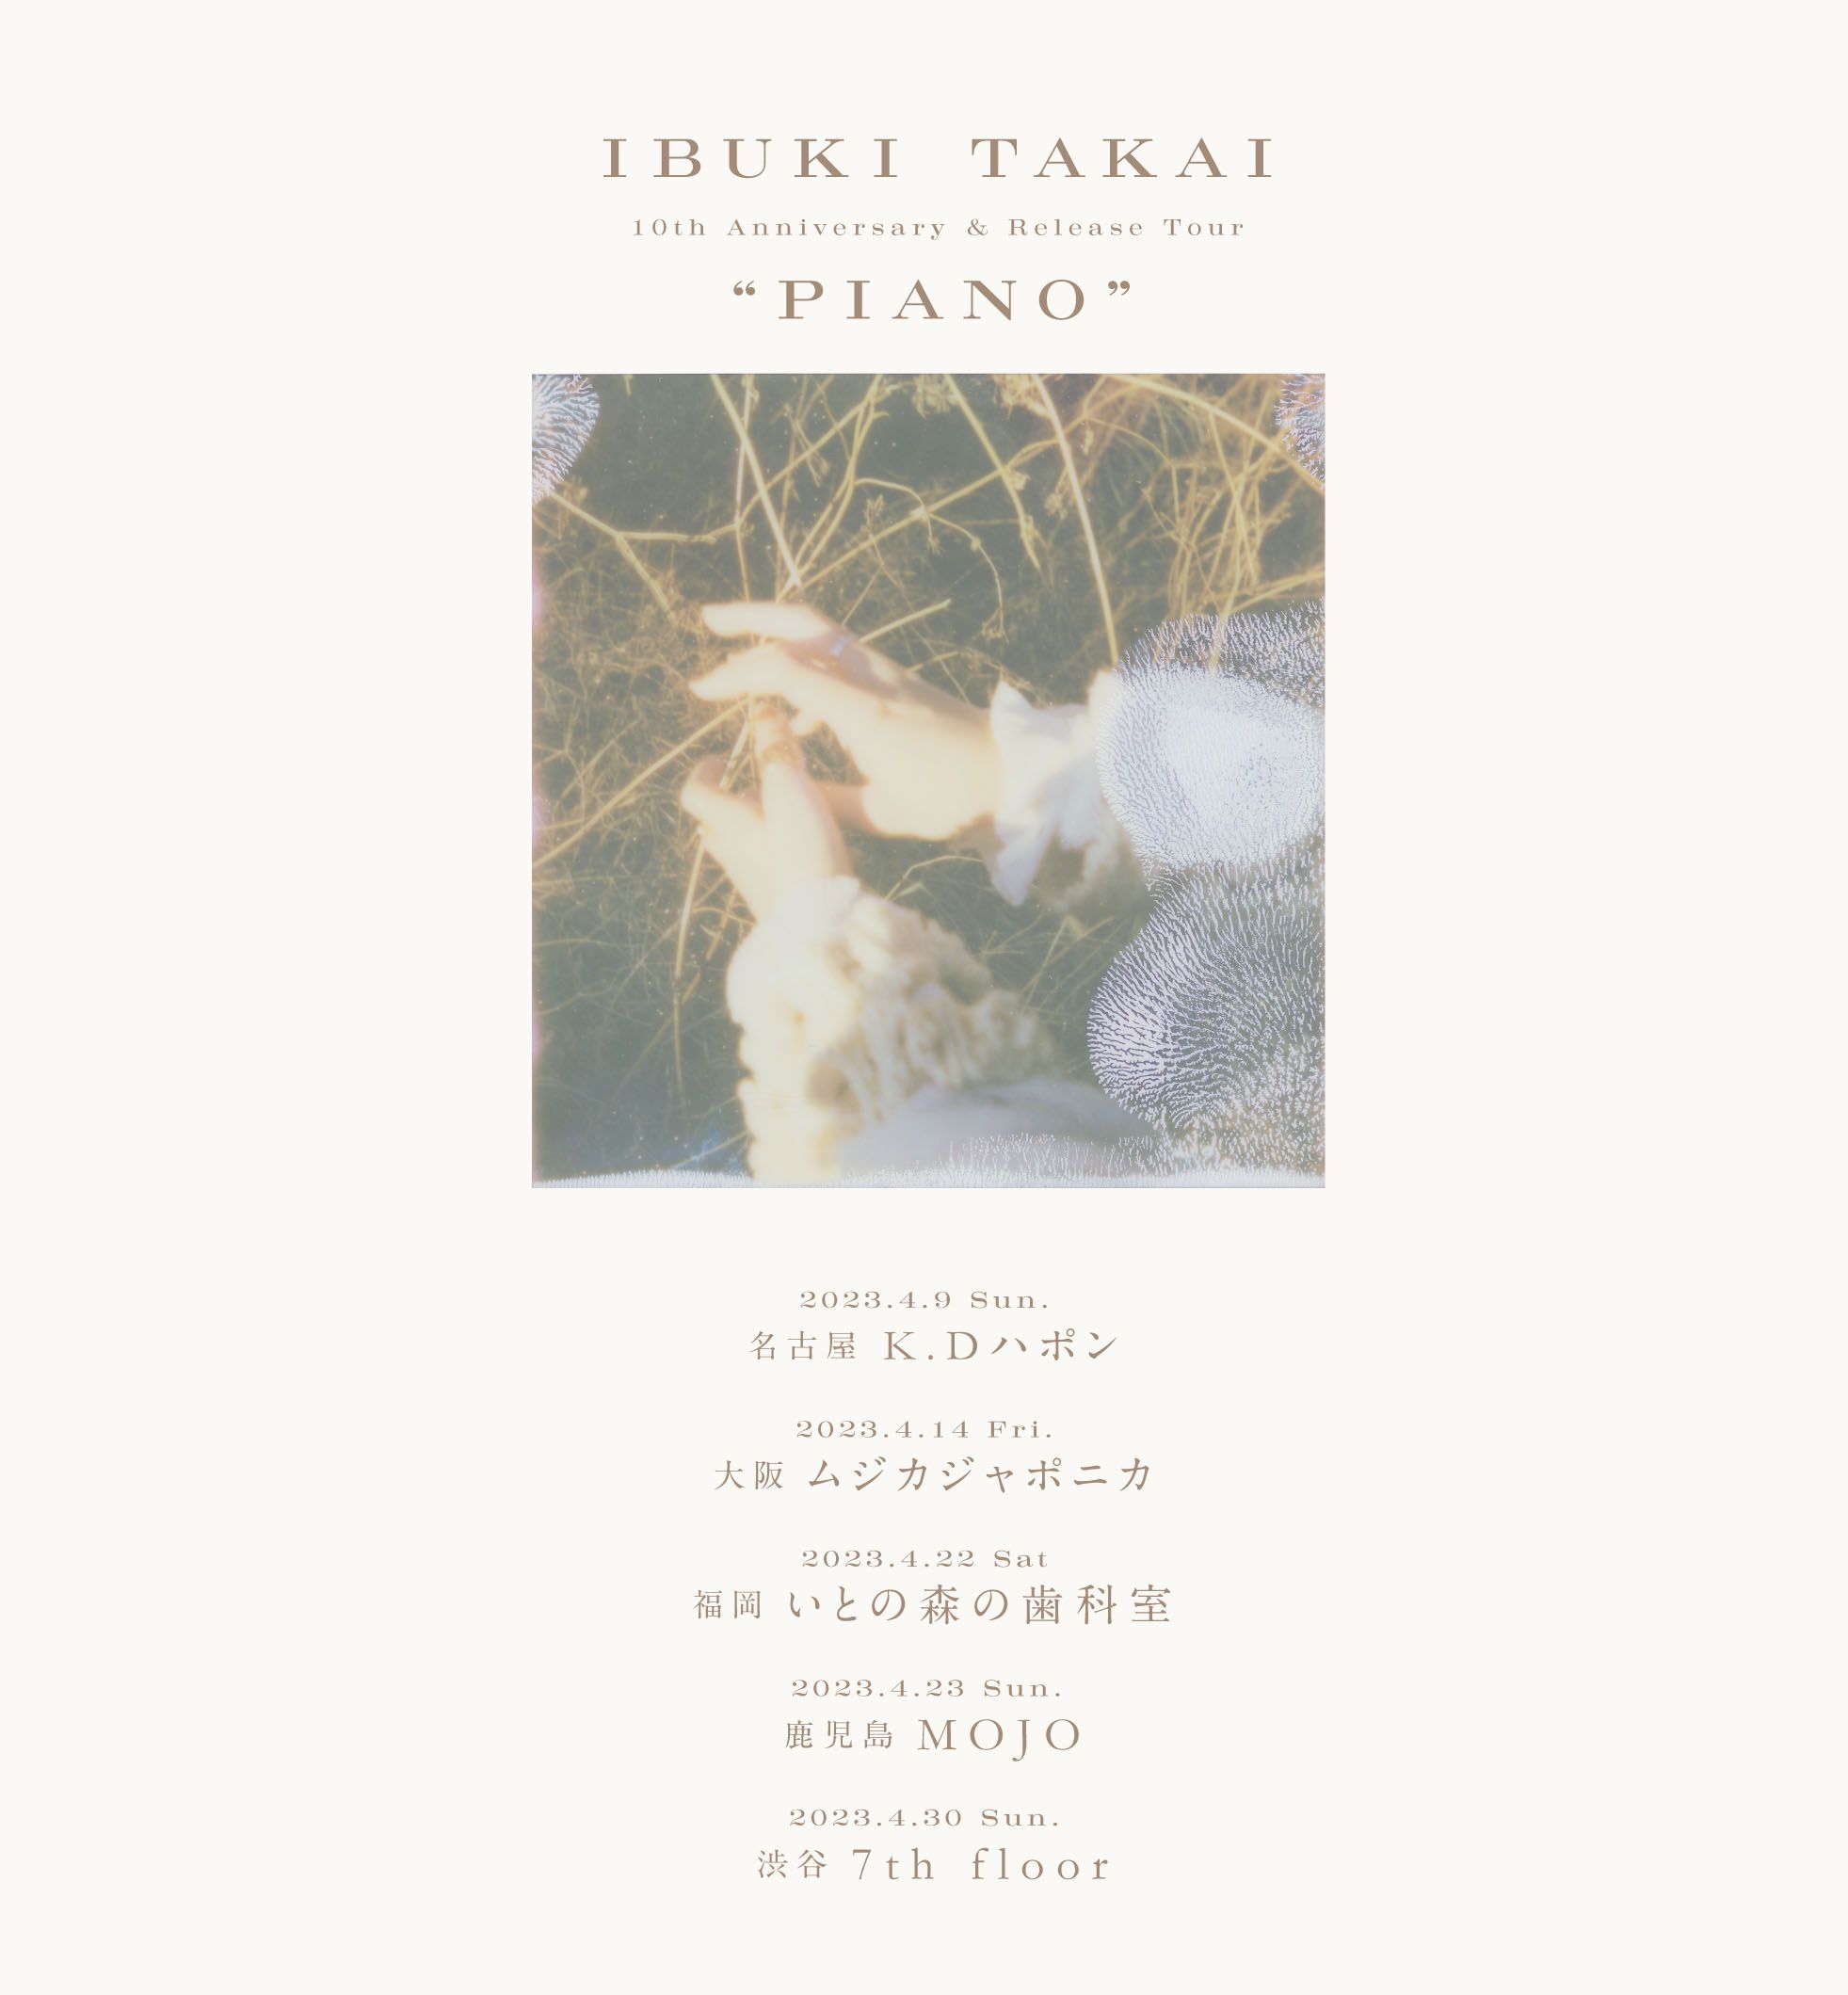 IBUKI TAKAI  10th anniversary & release tour “PIANO”